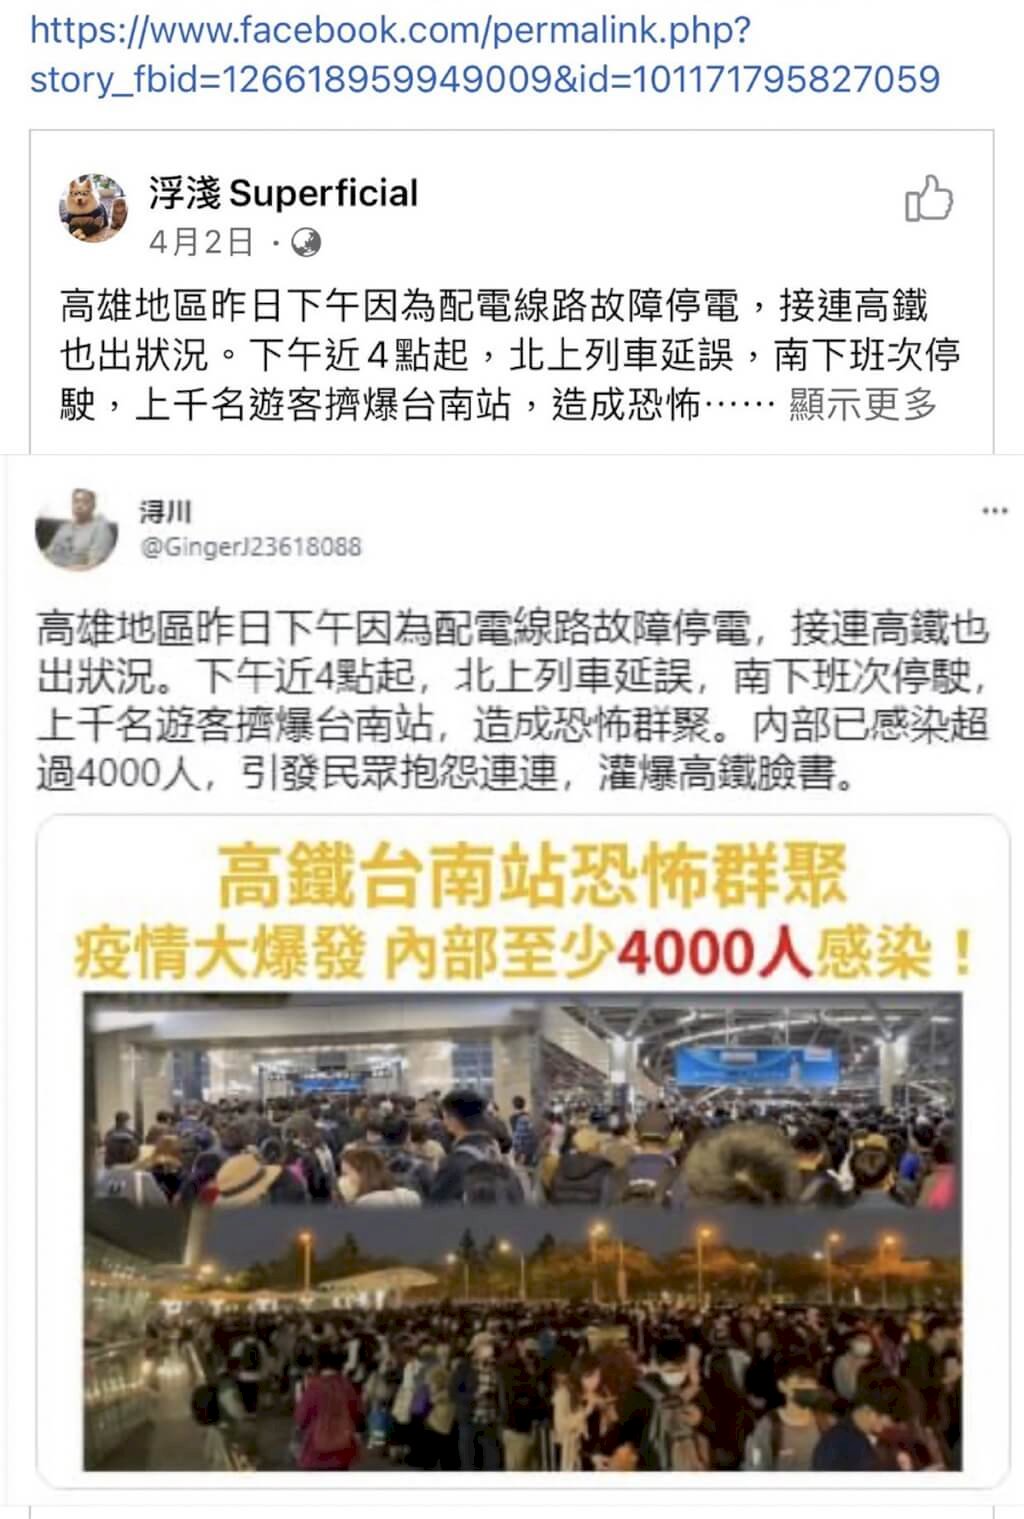 「台南車站確診4000人」不實訊息  疑境外勢力操控